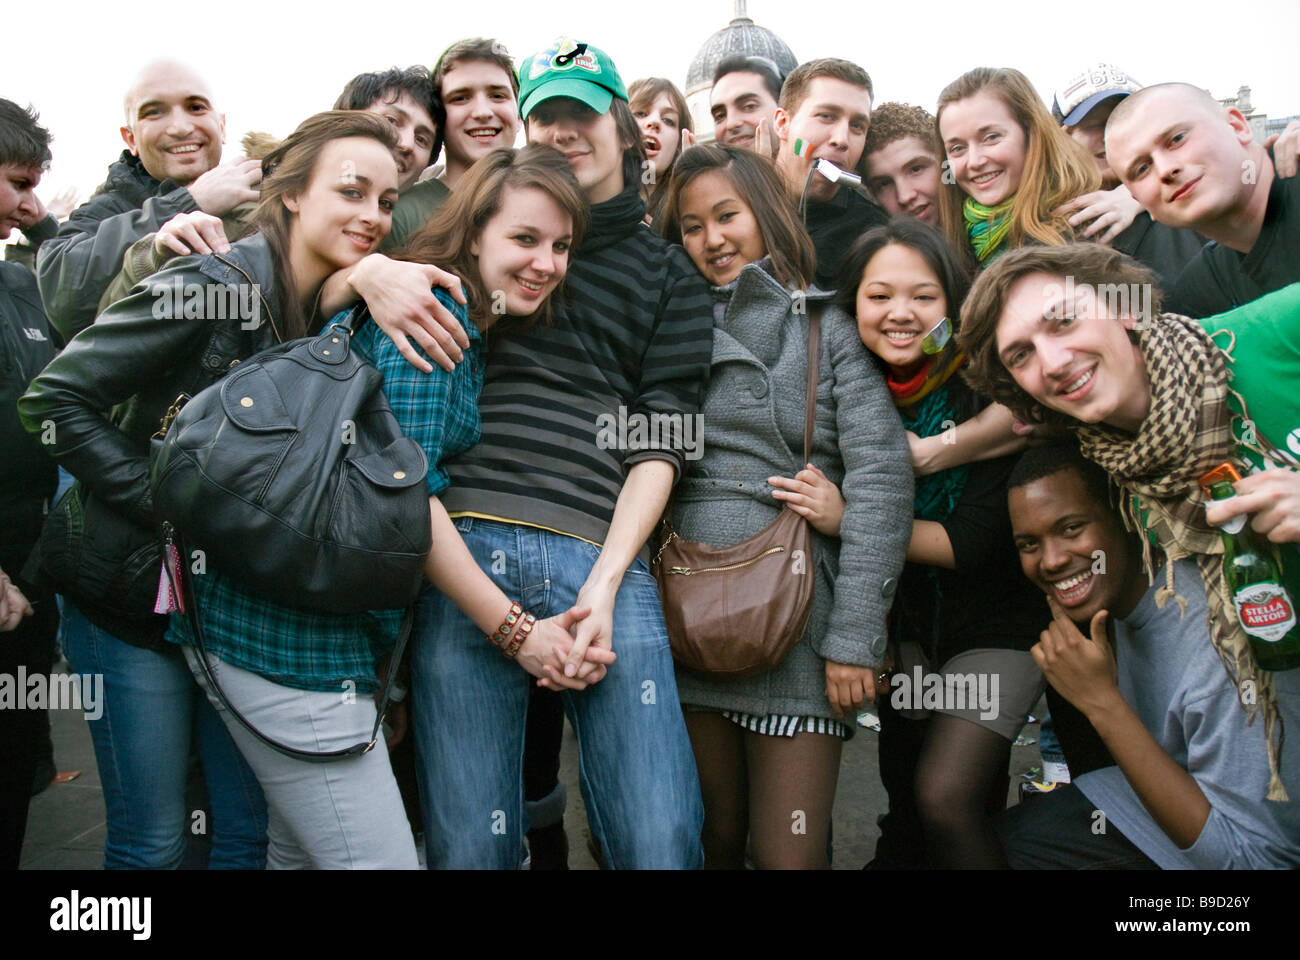 Gruppe von multikulturellen junge Männer und Frauen feiern am St. Patricks Day Feier auf dem Trafalgar Square. Stockfoto